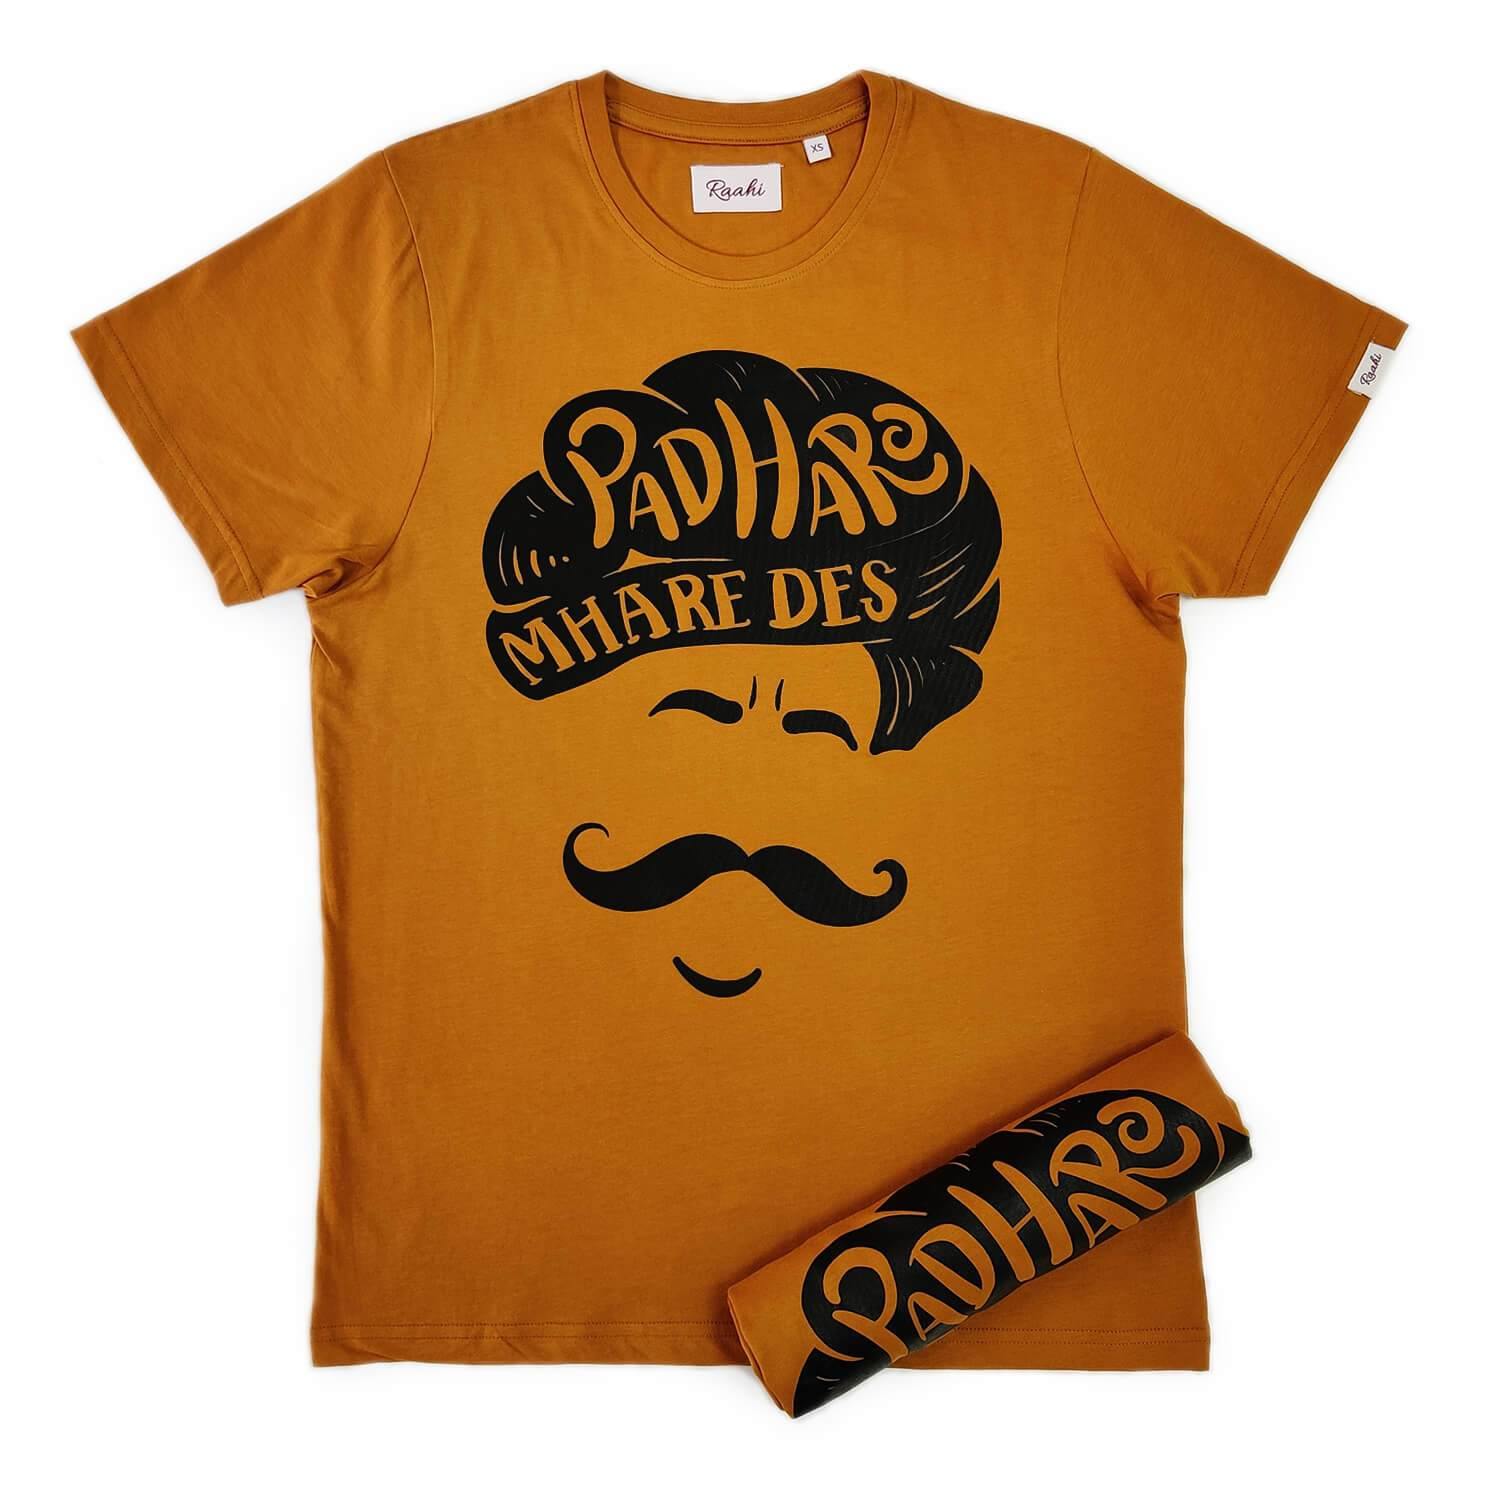 Padharo - Golden Brown T-Shirt - Raahi